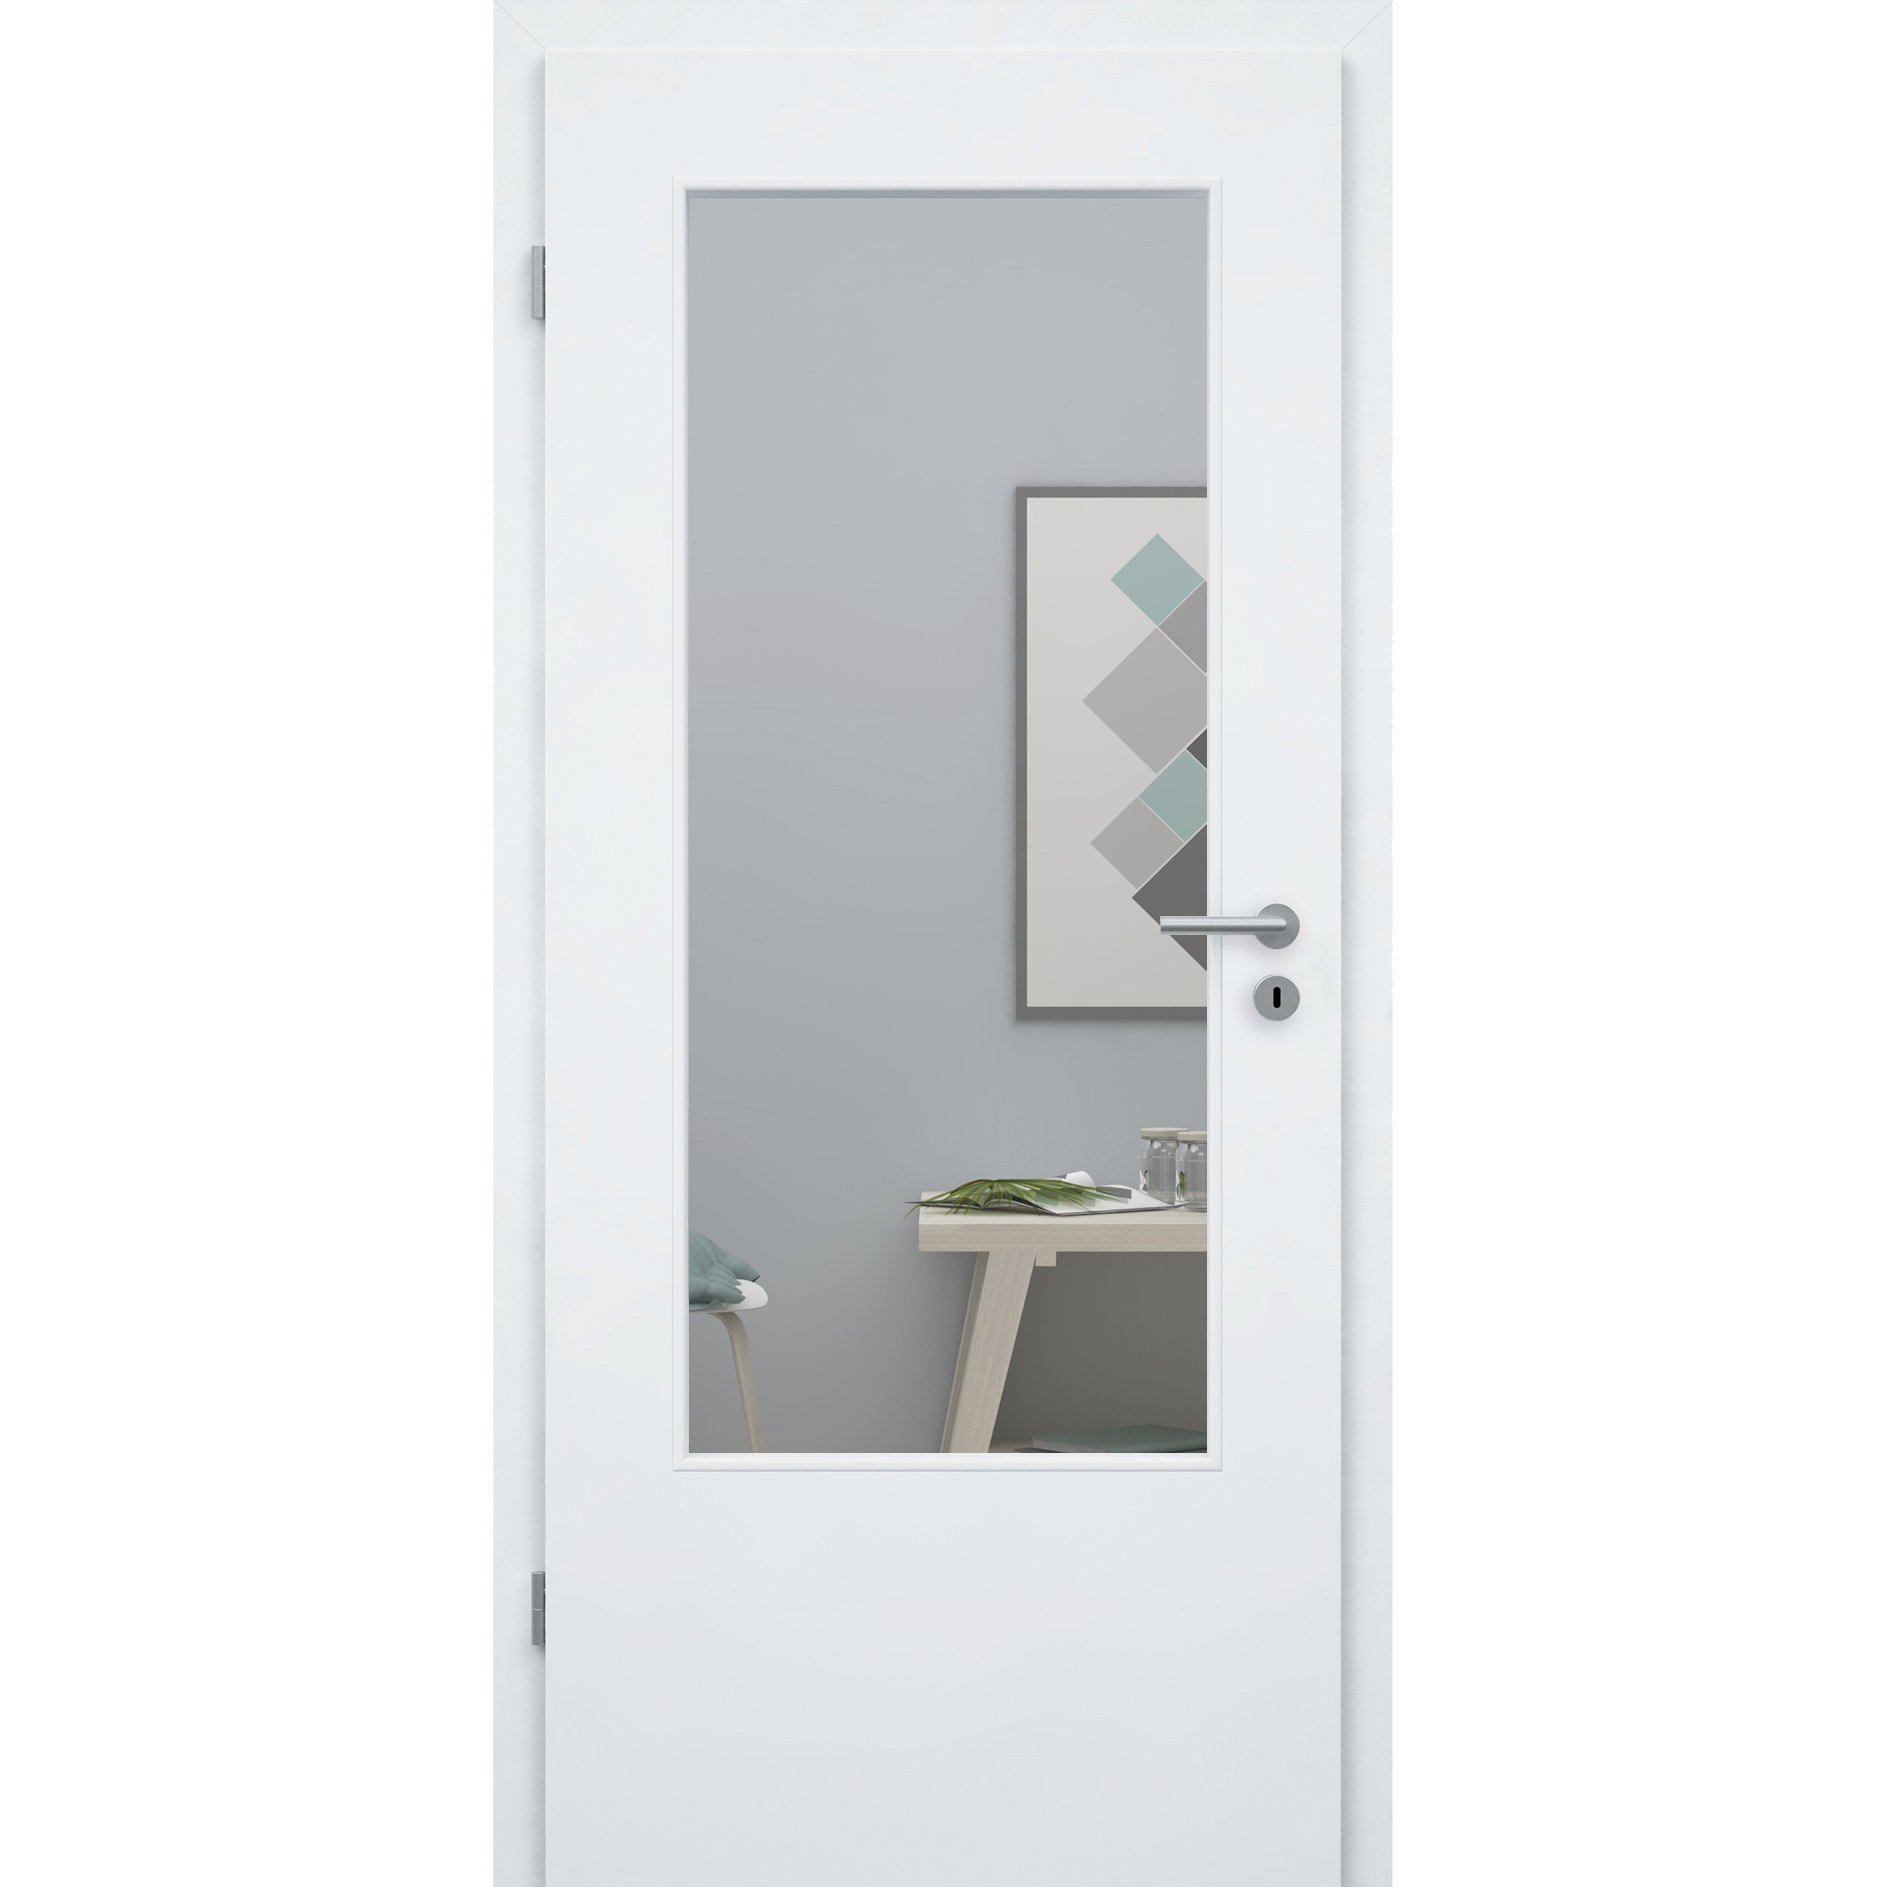 Zimmertür mit Lichtausschnitt CPL brillant-weiß ähnlich RAL 9003 Designkante